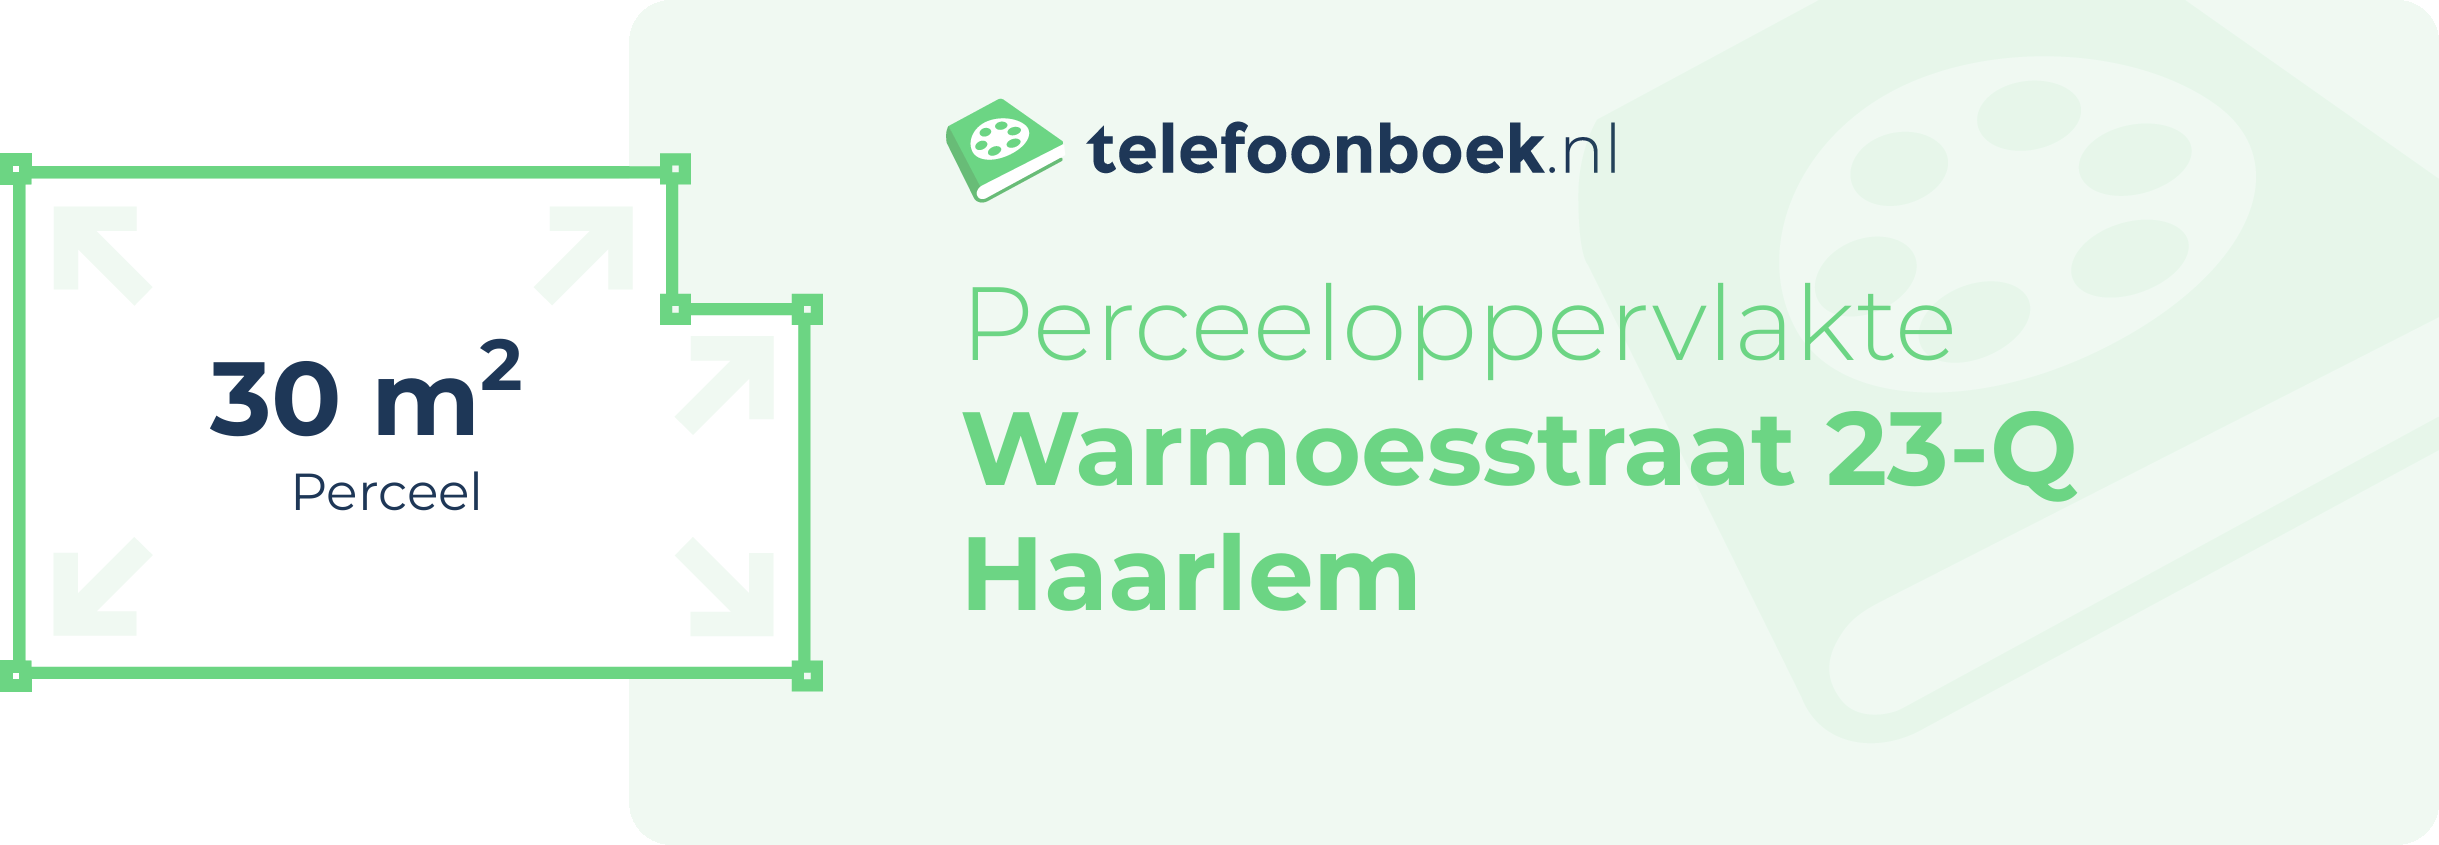 Perceeloppervlakte Warmoesstraat 23-Q Haarlem